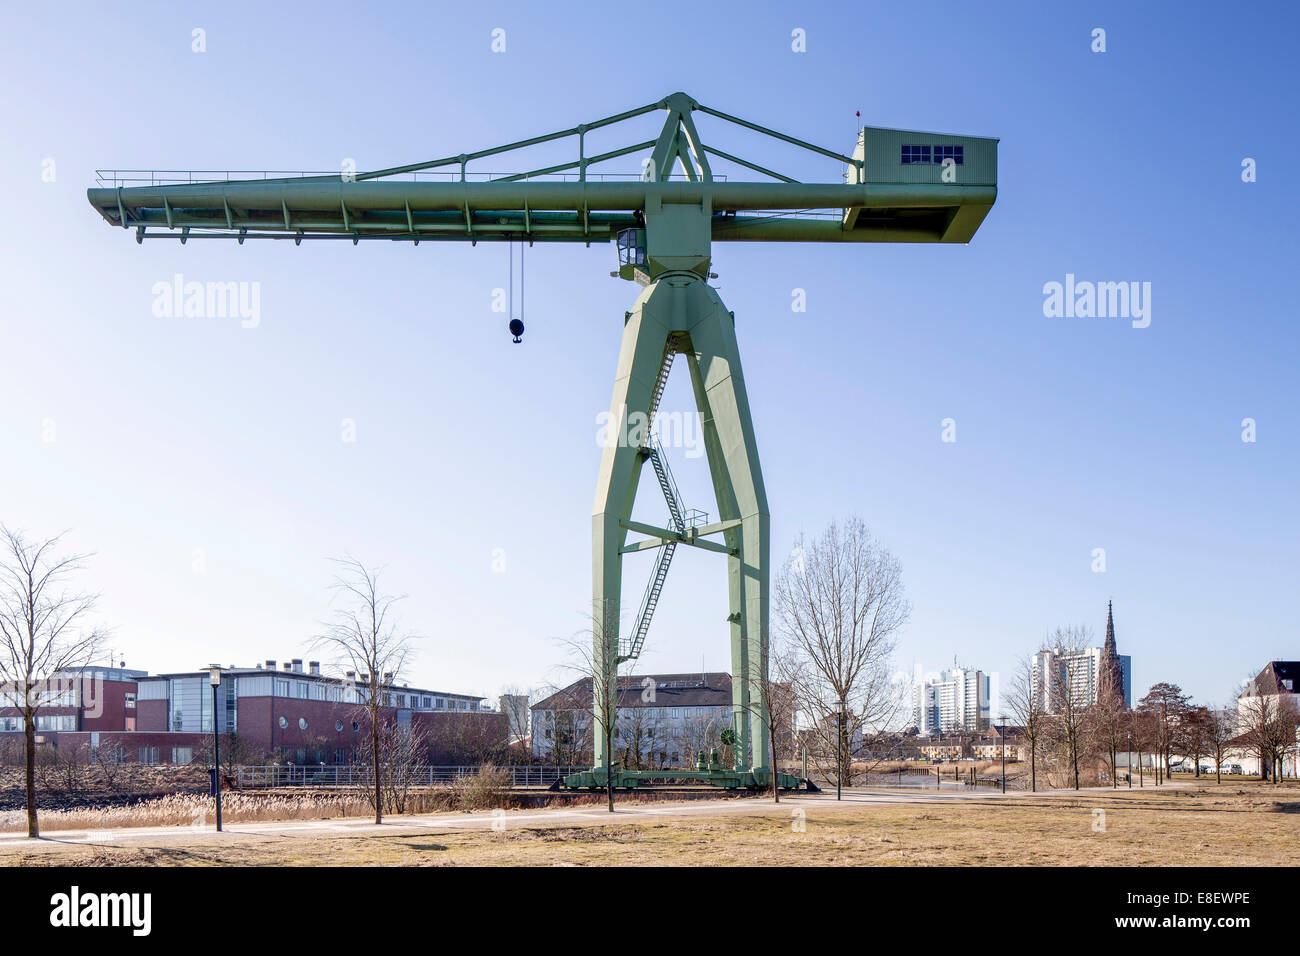 L'ancien chantier naval Rickmers, patrimoine culturel protégé crane, Geestemuende, Bremerhaven, Brême, Allemagne Banque D'Images